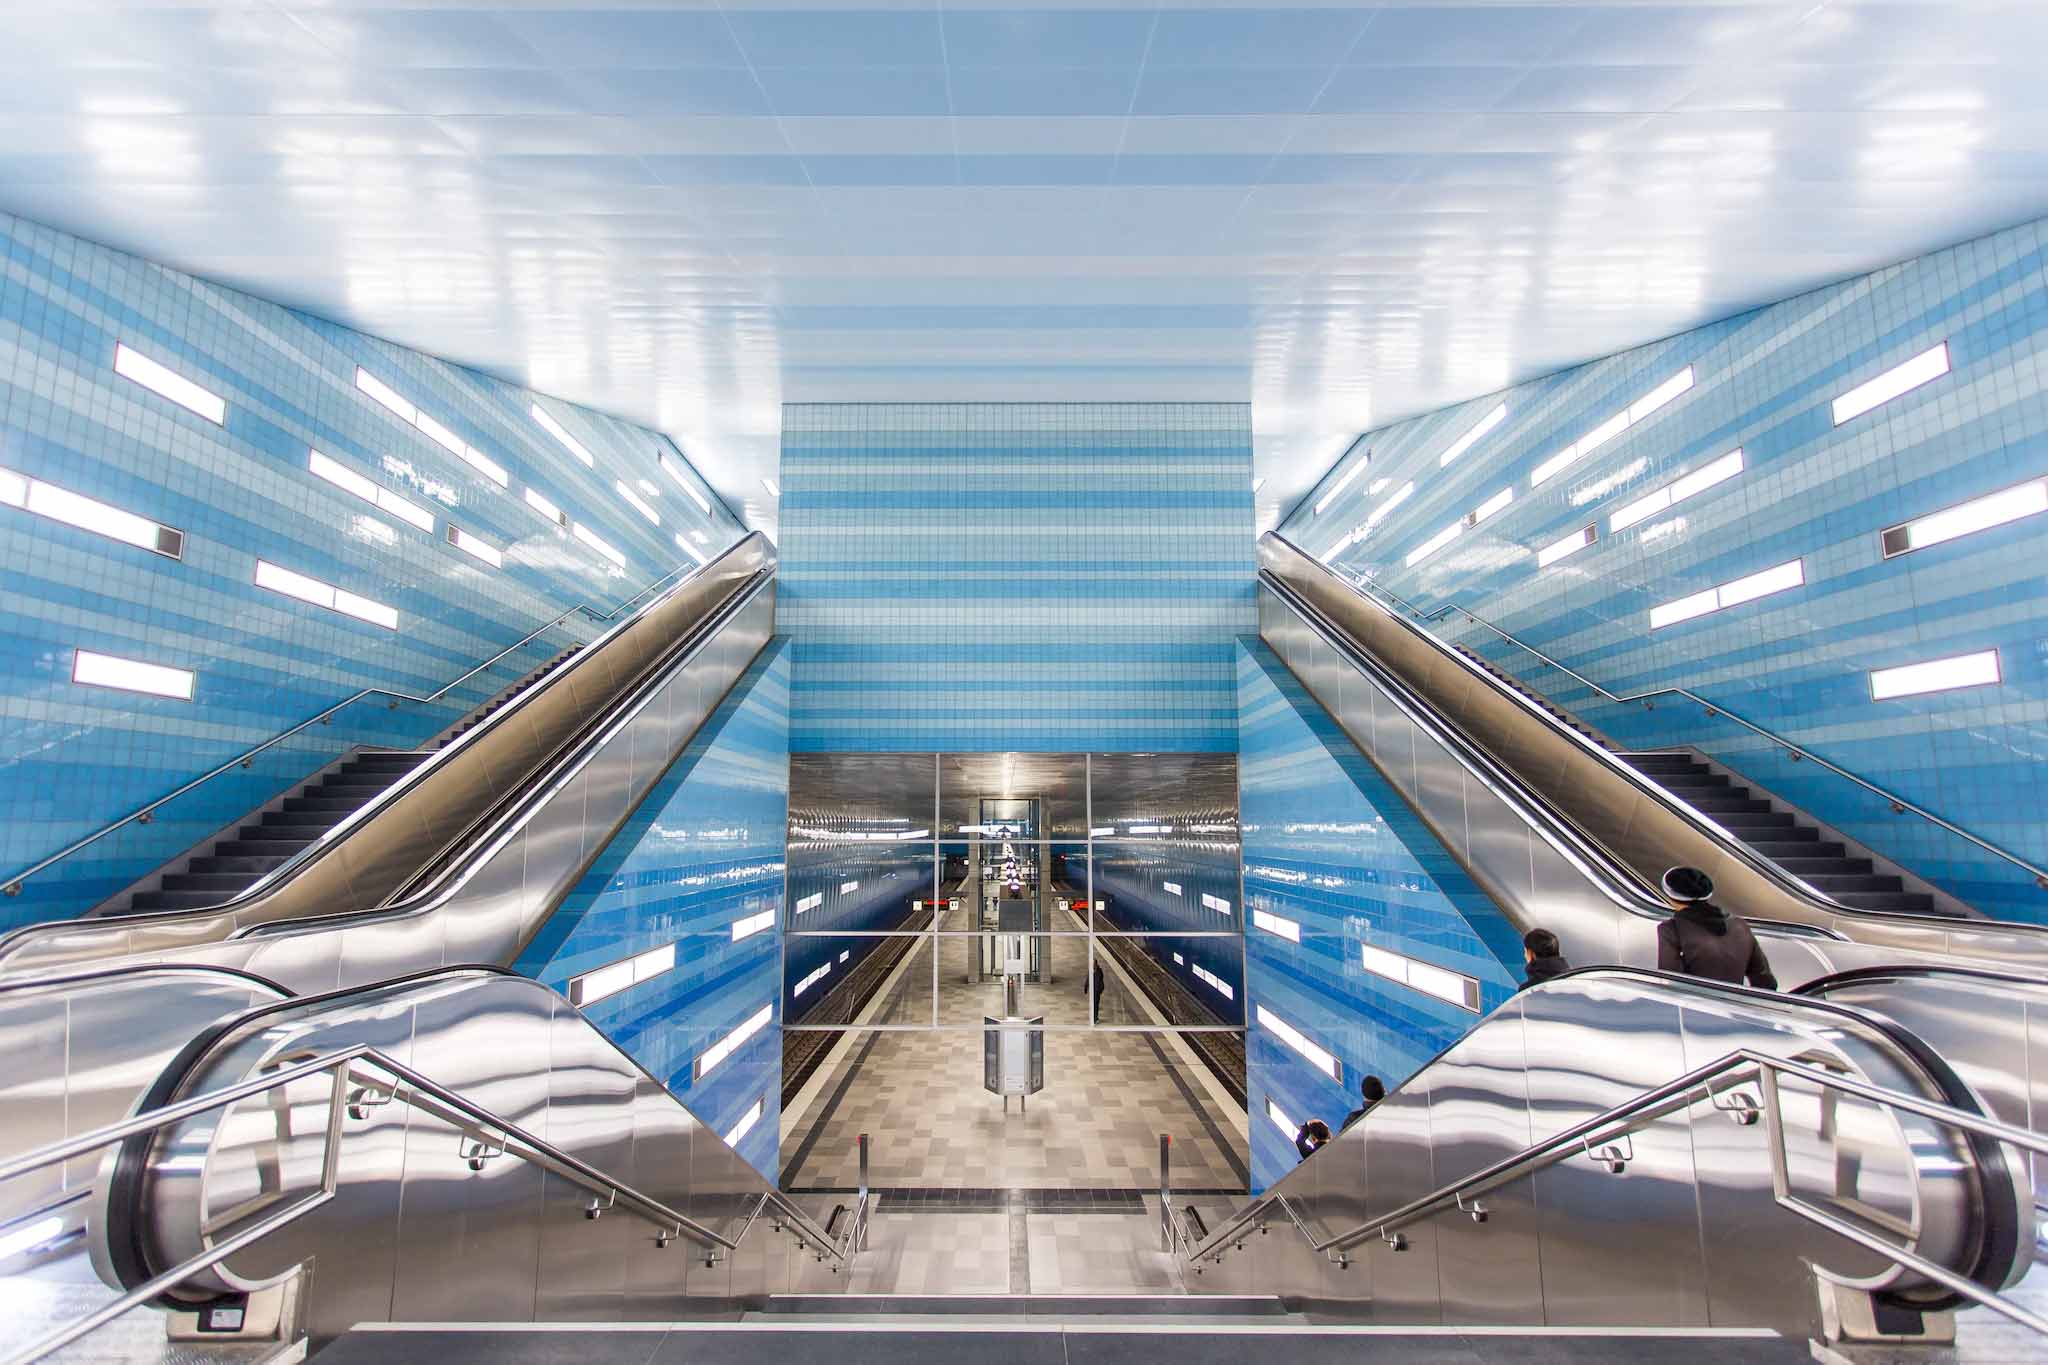 Abstract escalator mirror blue